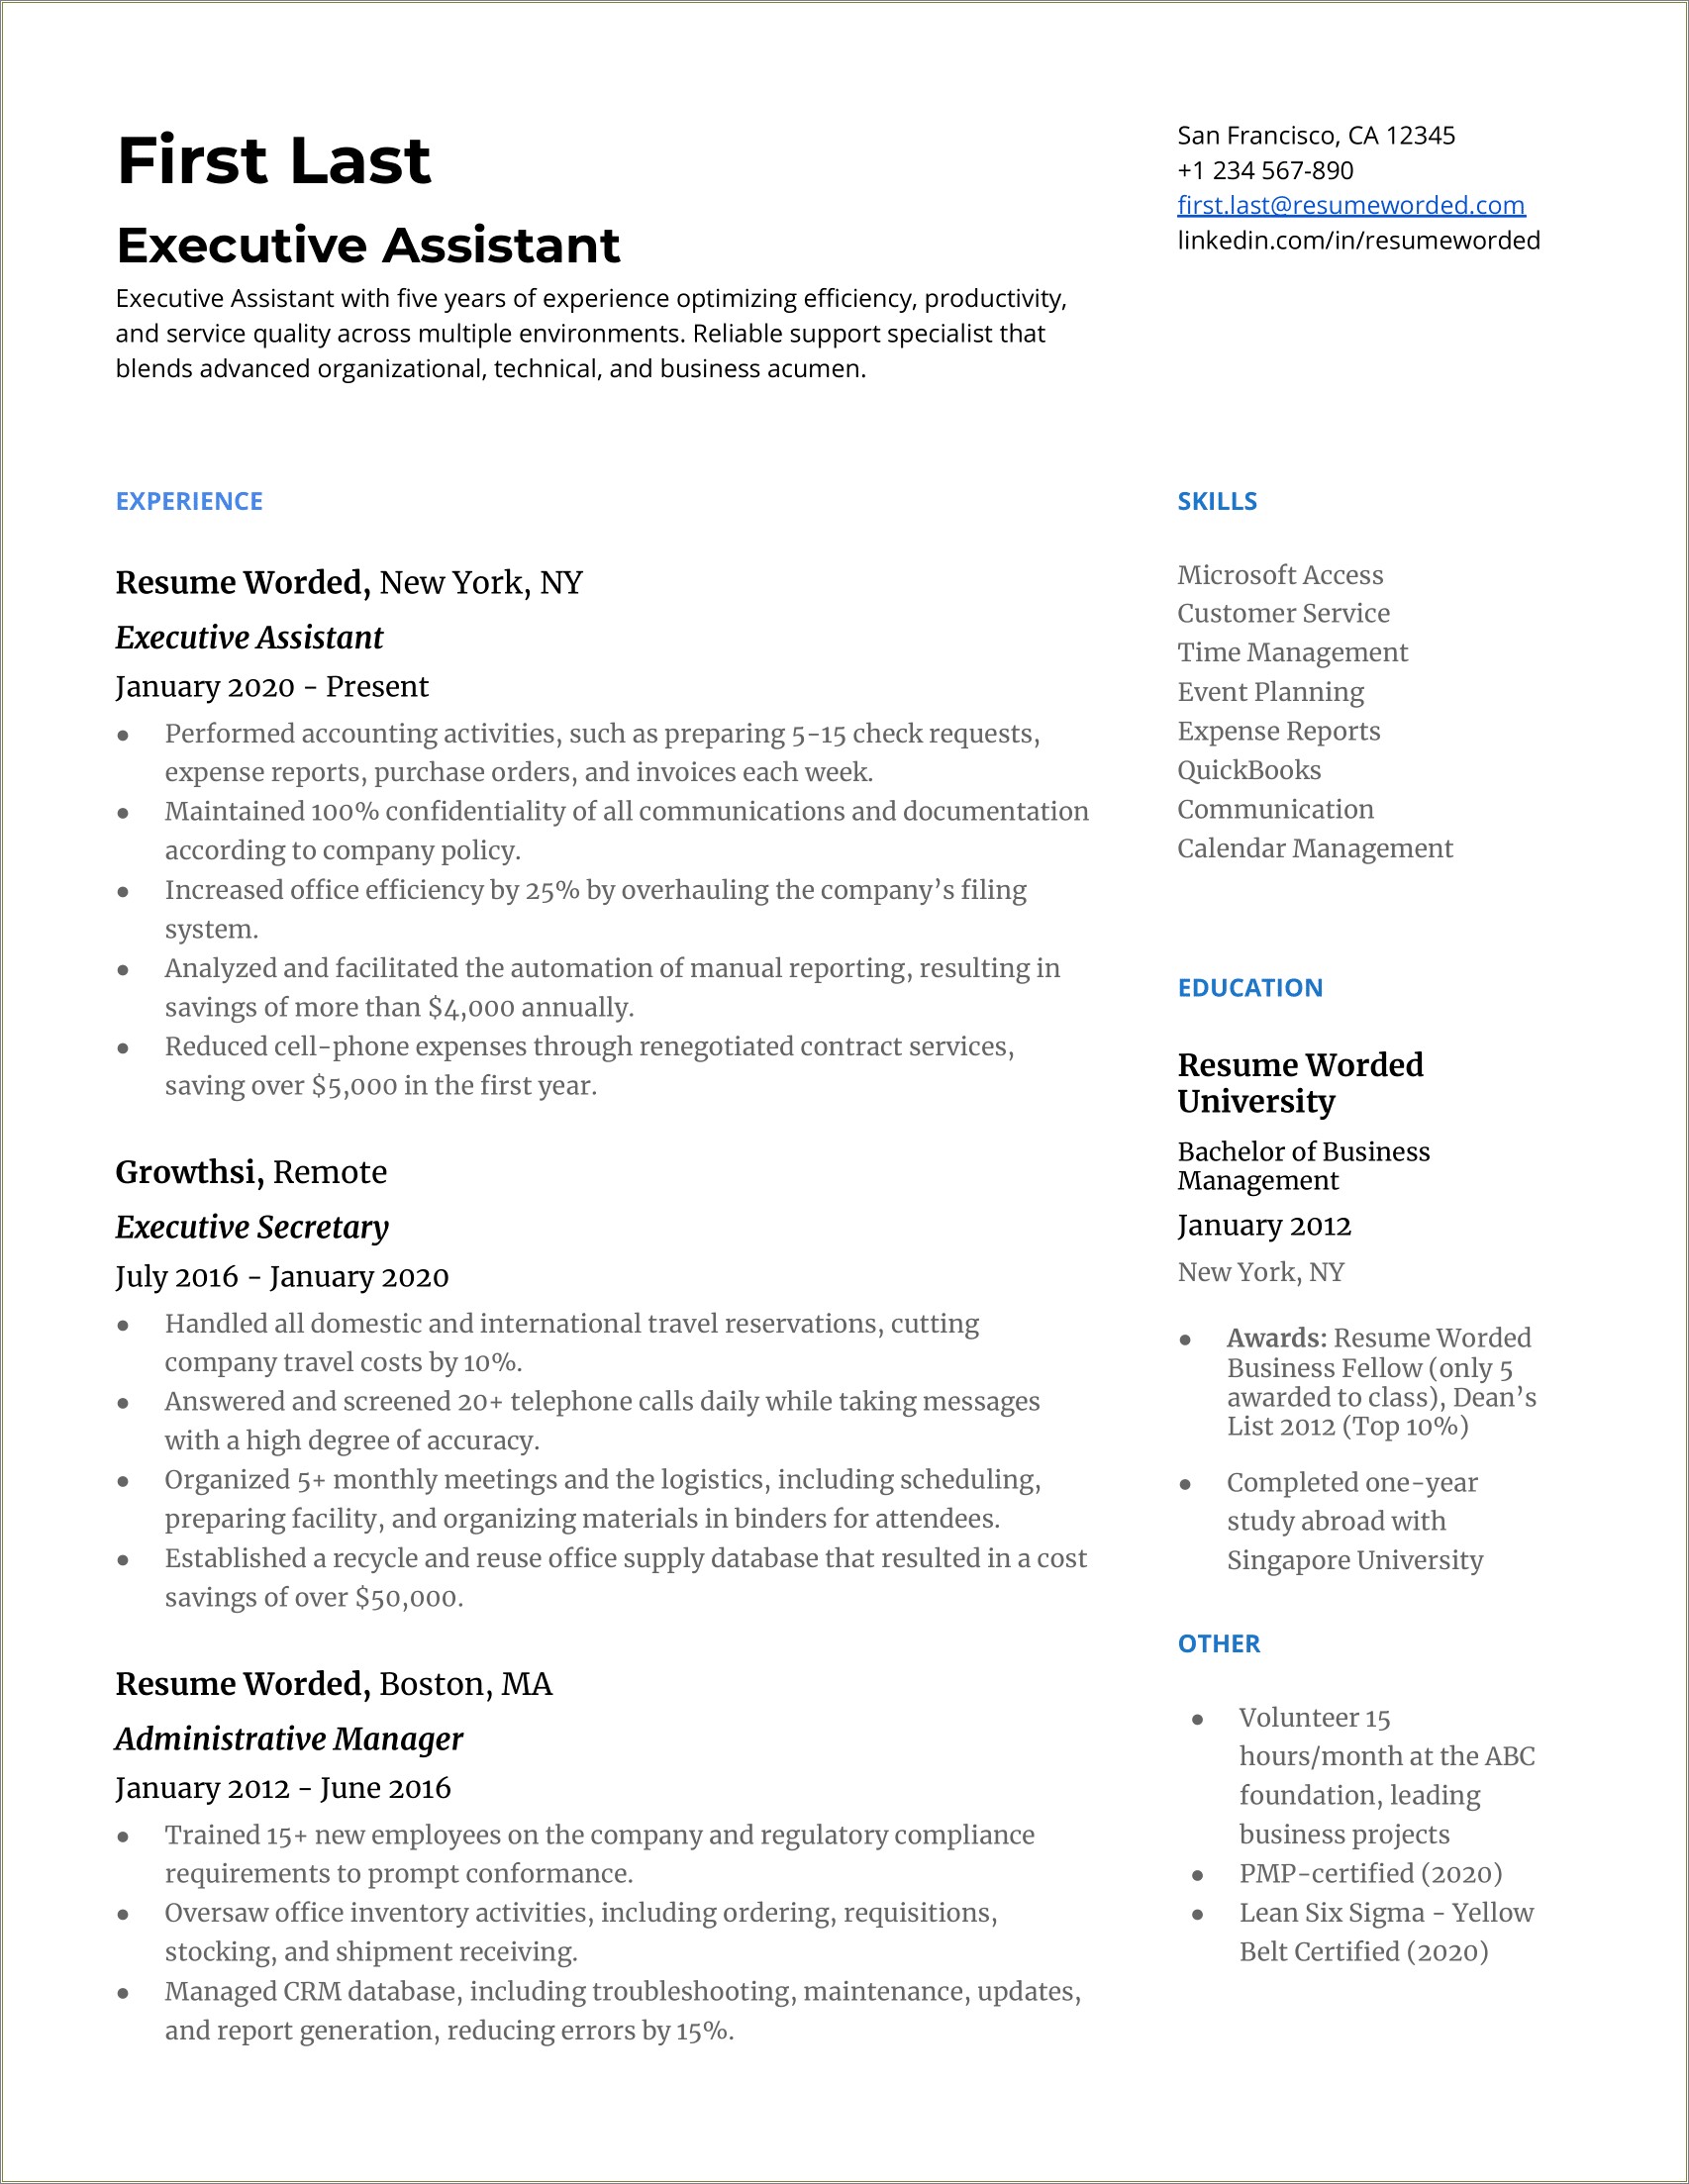 Job Description Resume Administrative Assistant